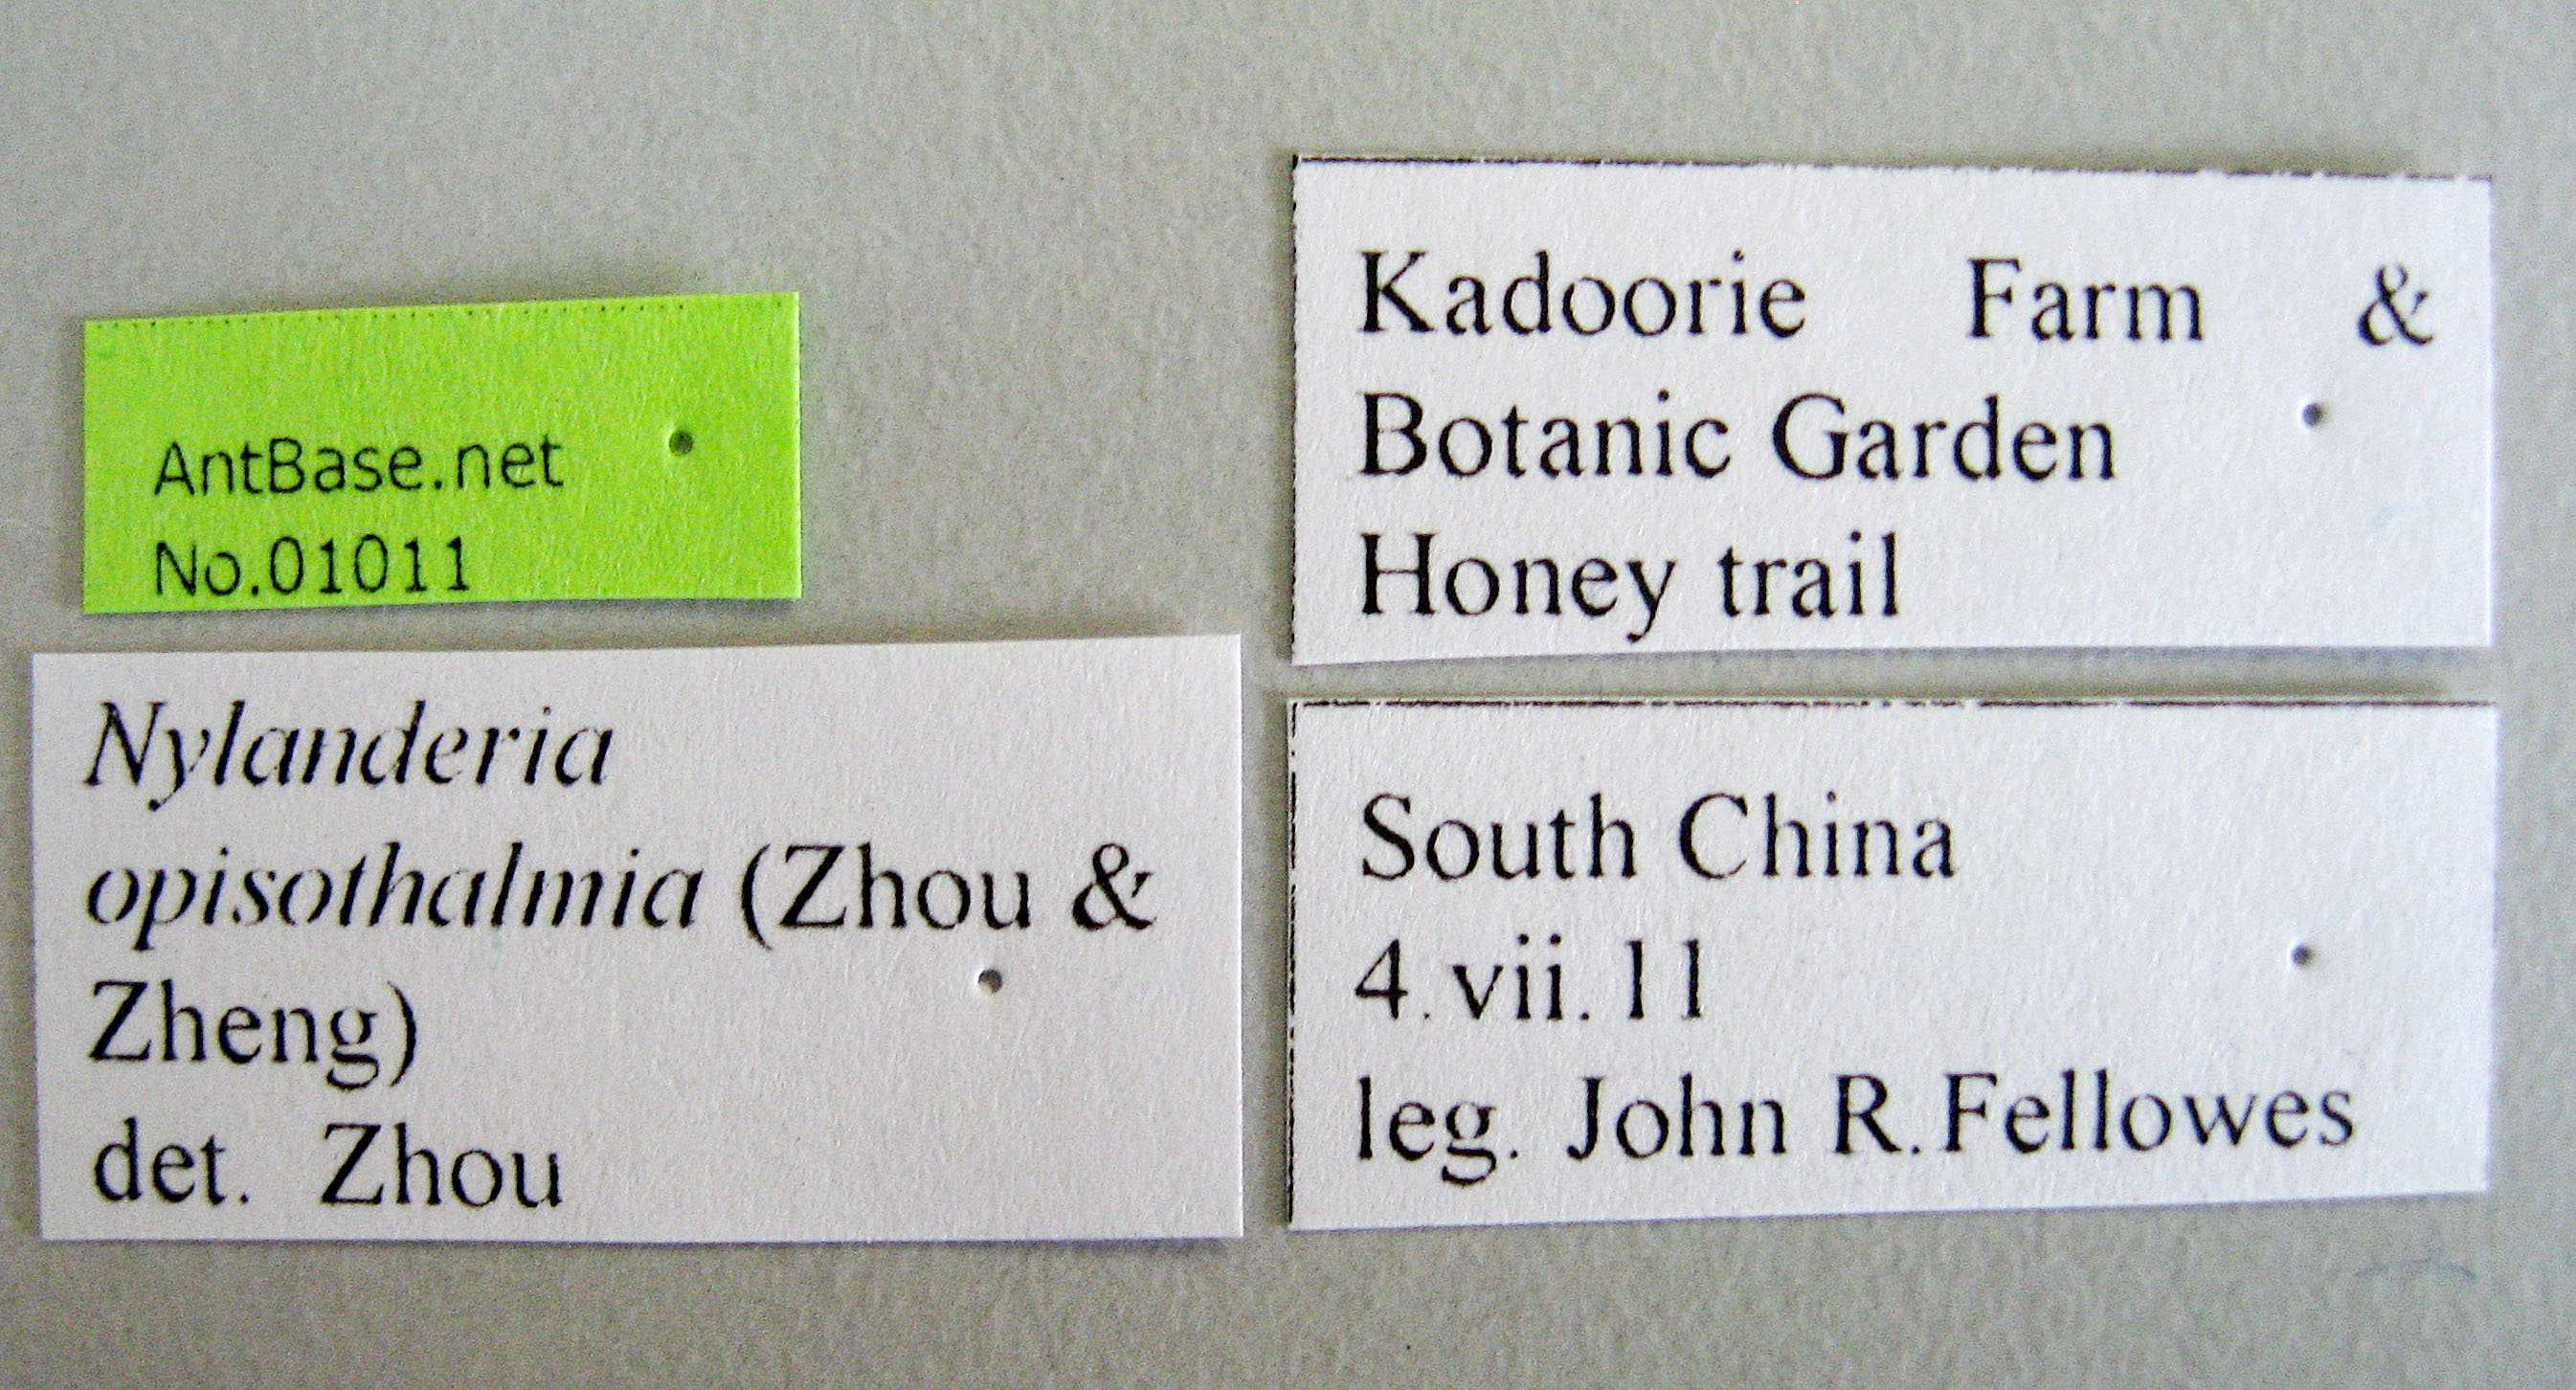 Foto Nylanderia opisothalmia Zhou & Zheng , 1998 Label